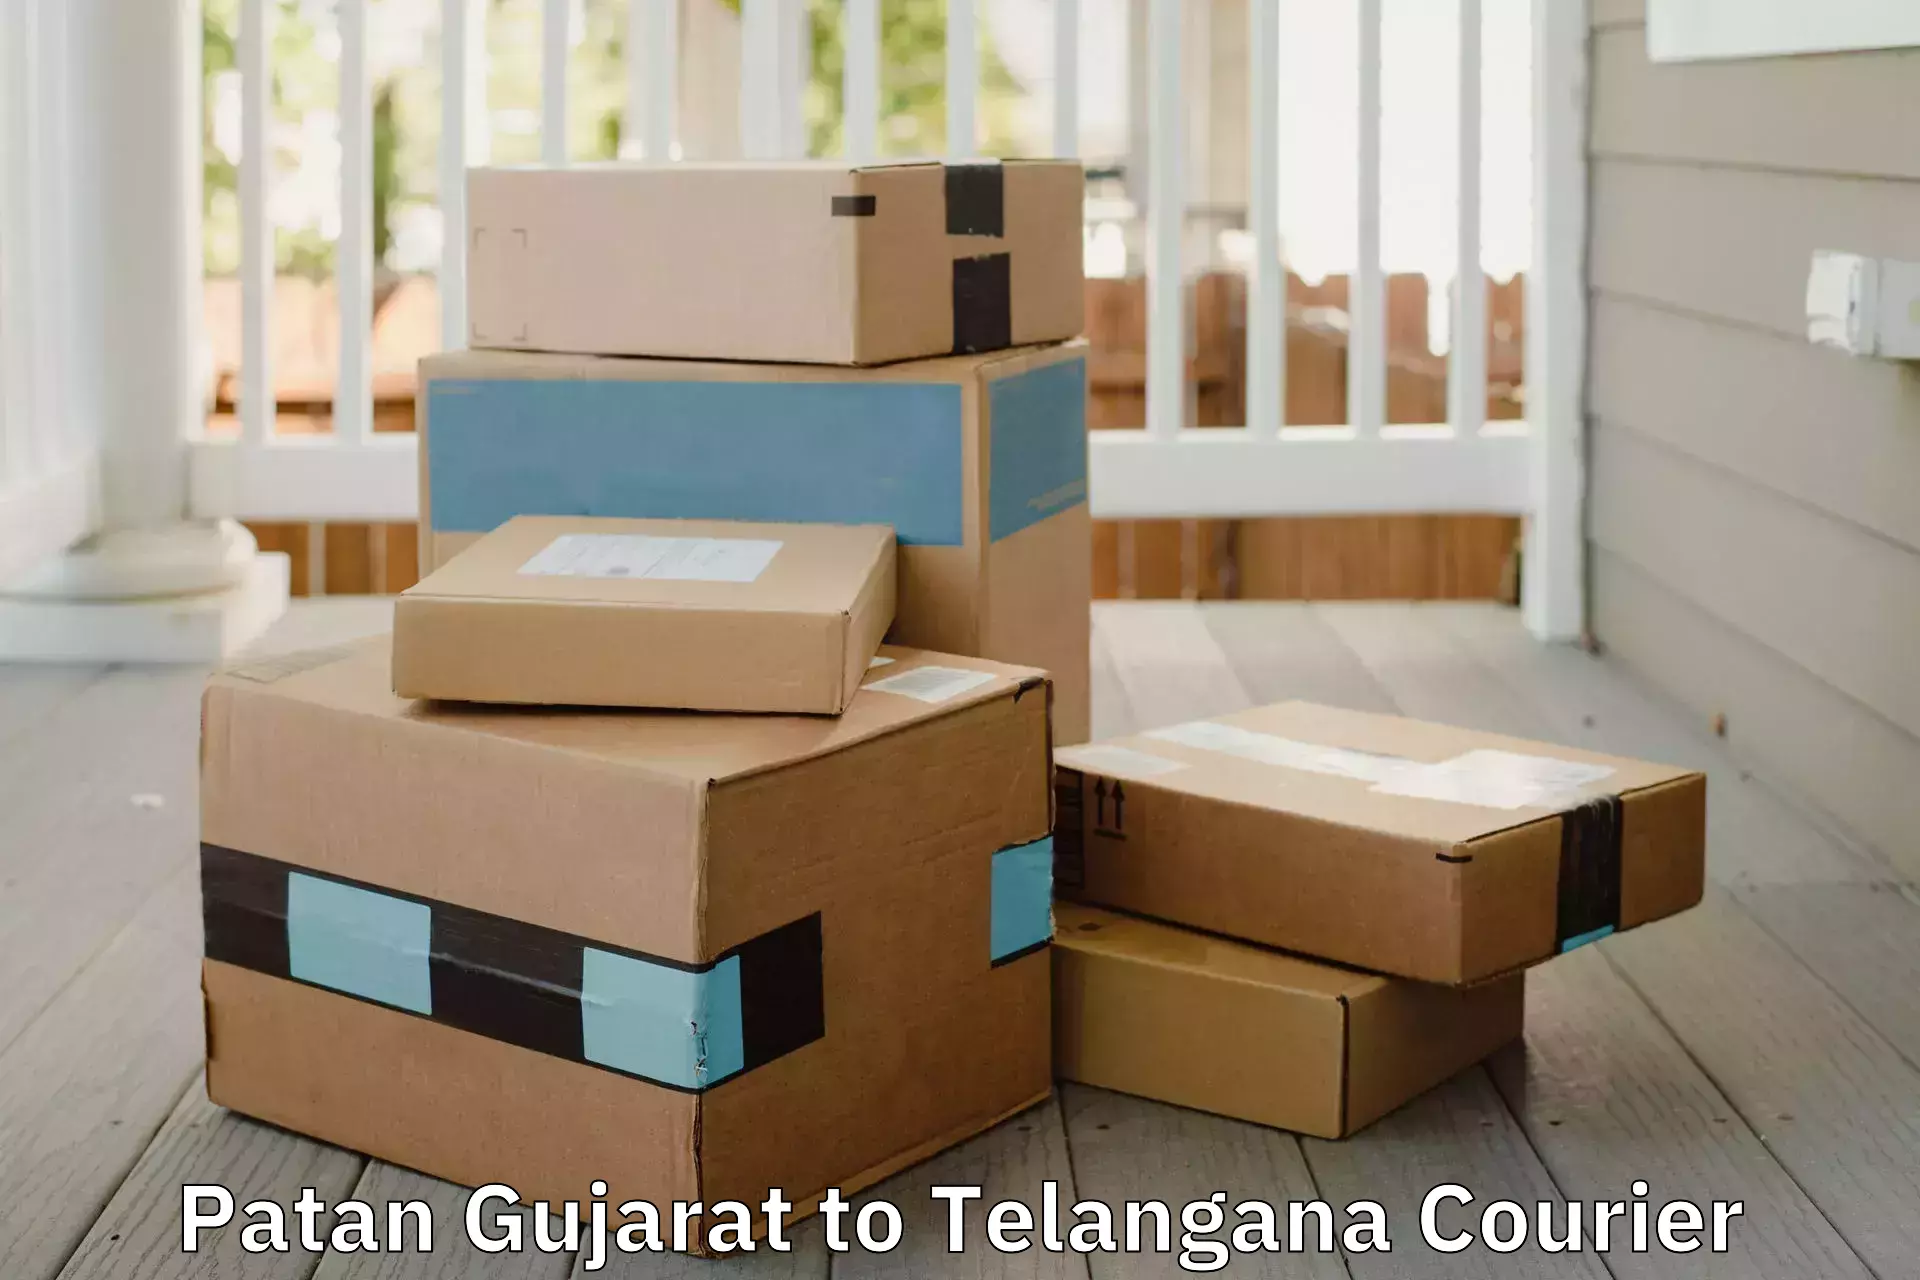 Budget-friendly movers Patan Gujarat to Telangana